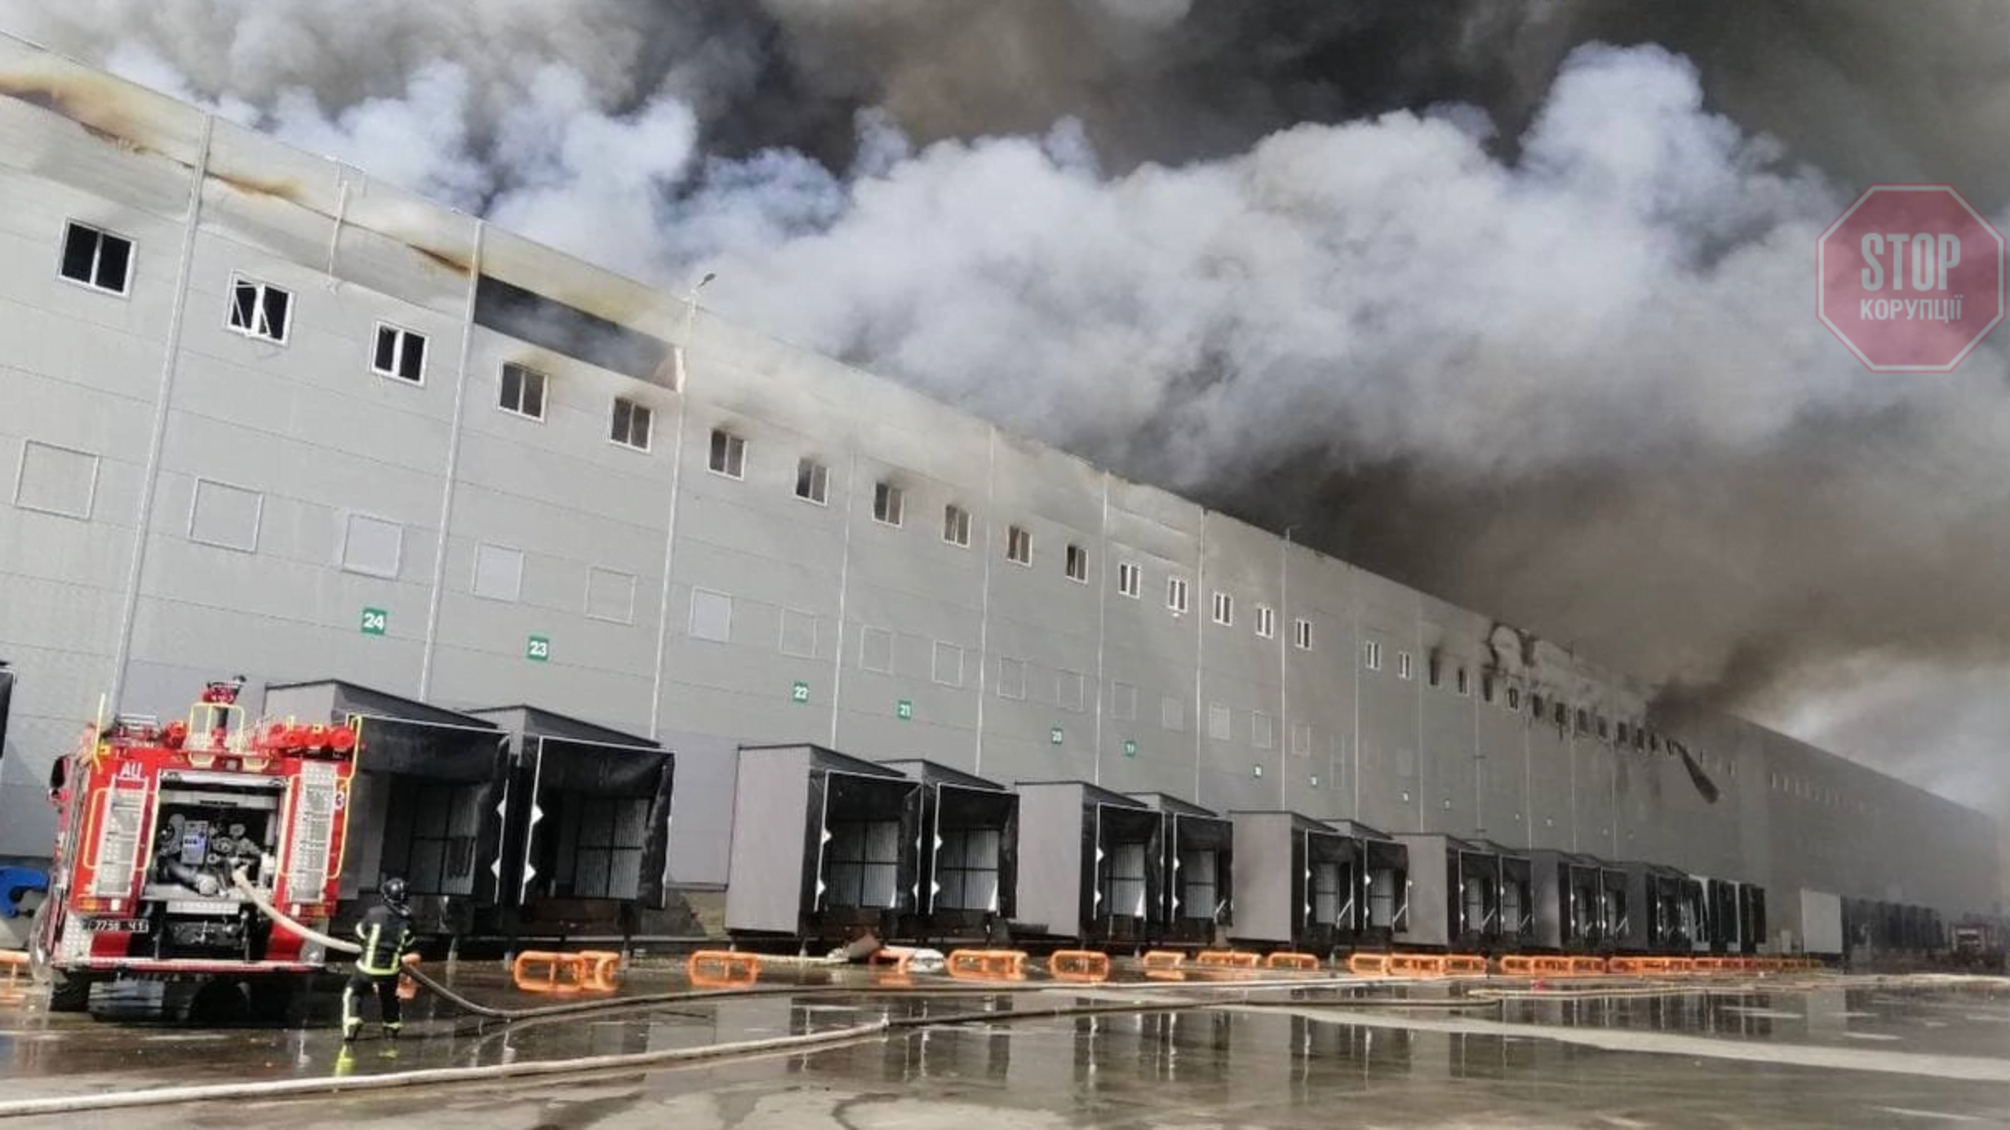 Площа загоряння досягла 10000 кв. м: на Одещині горить склад